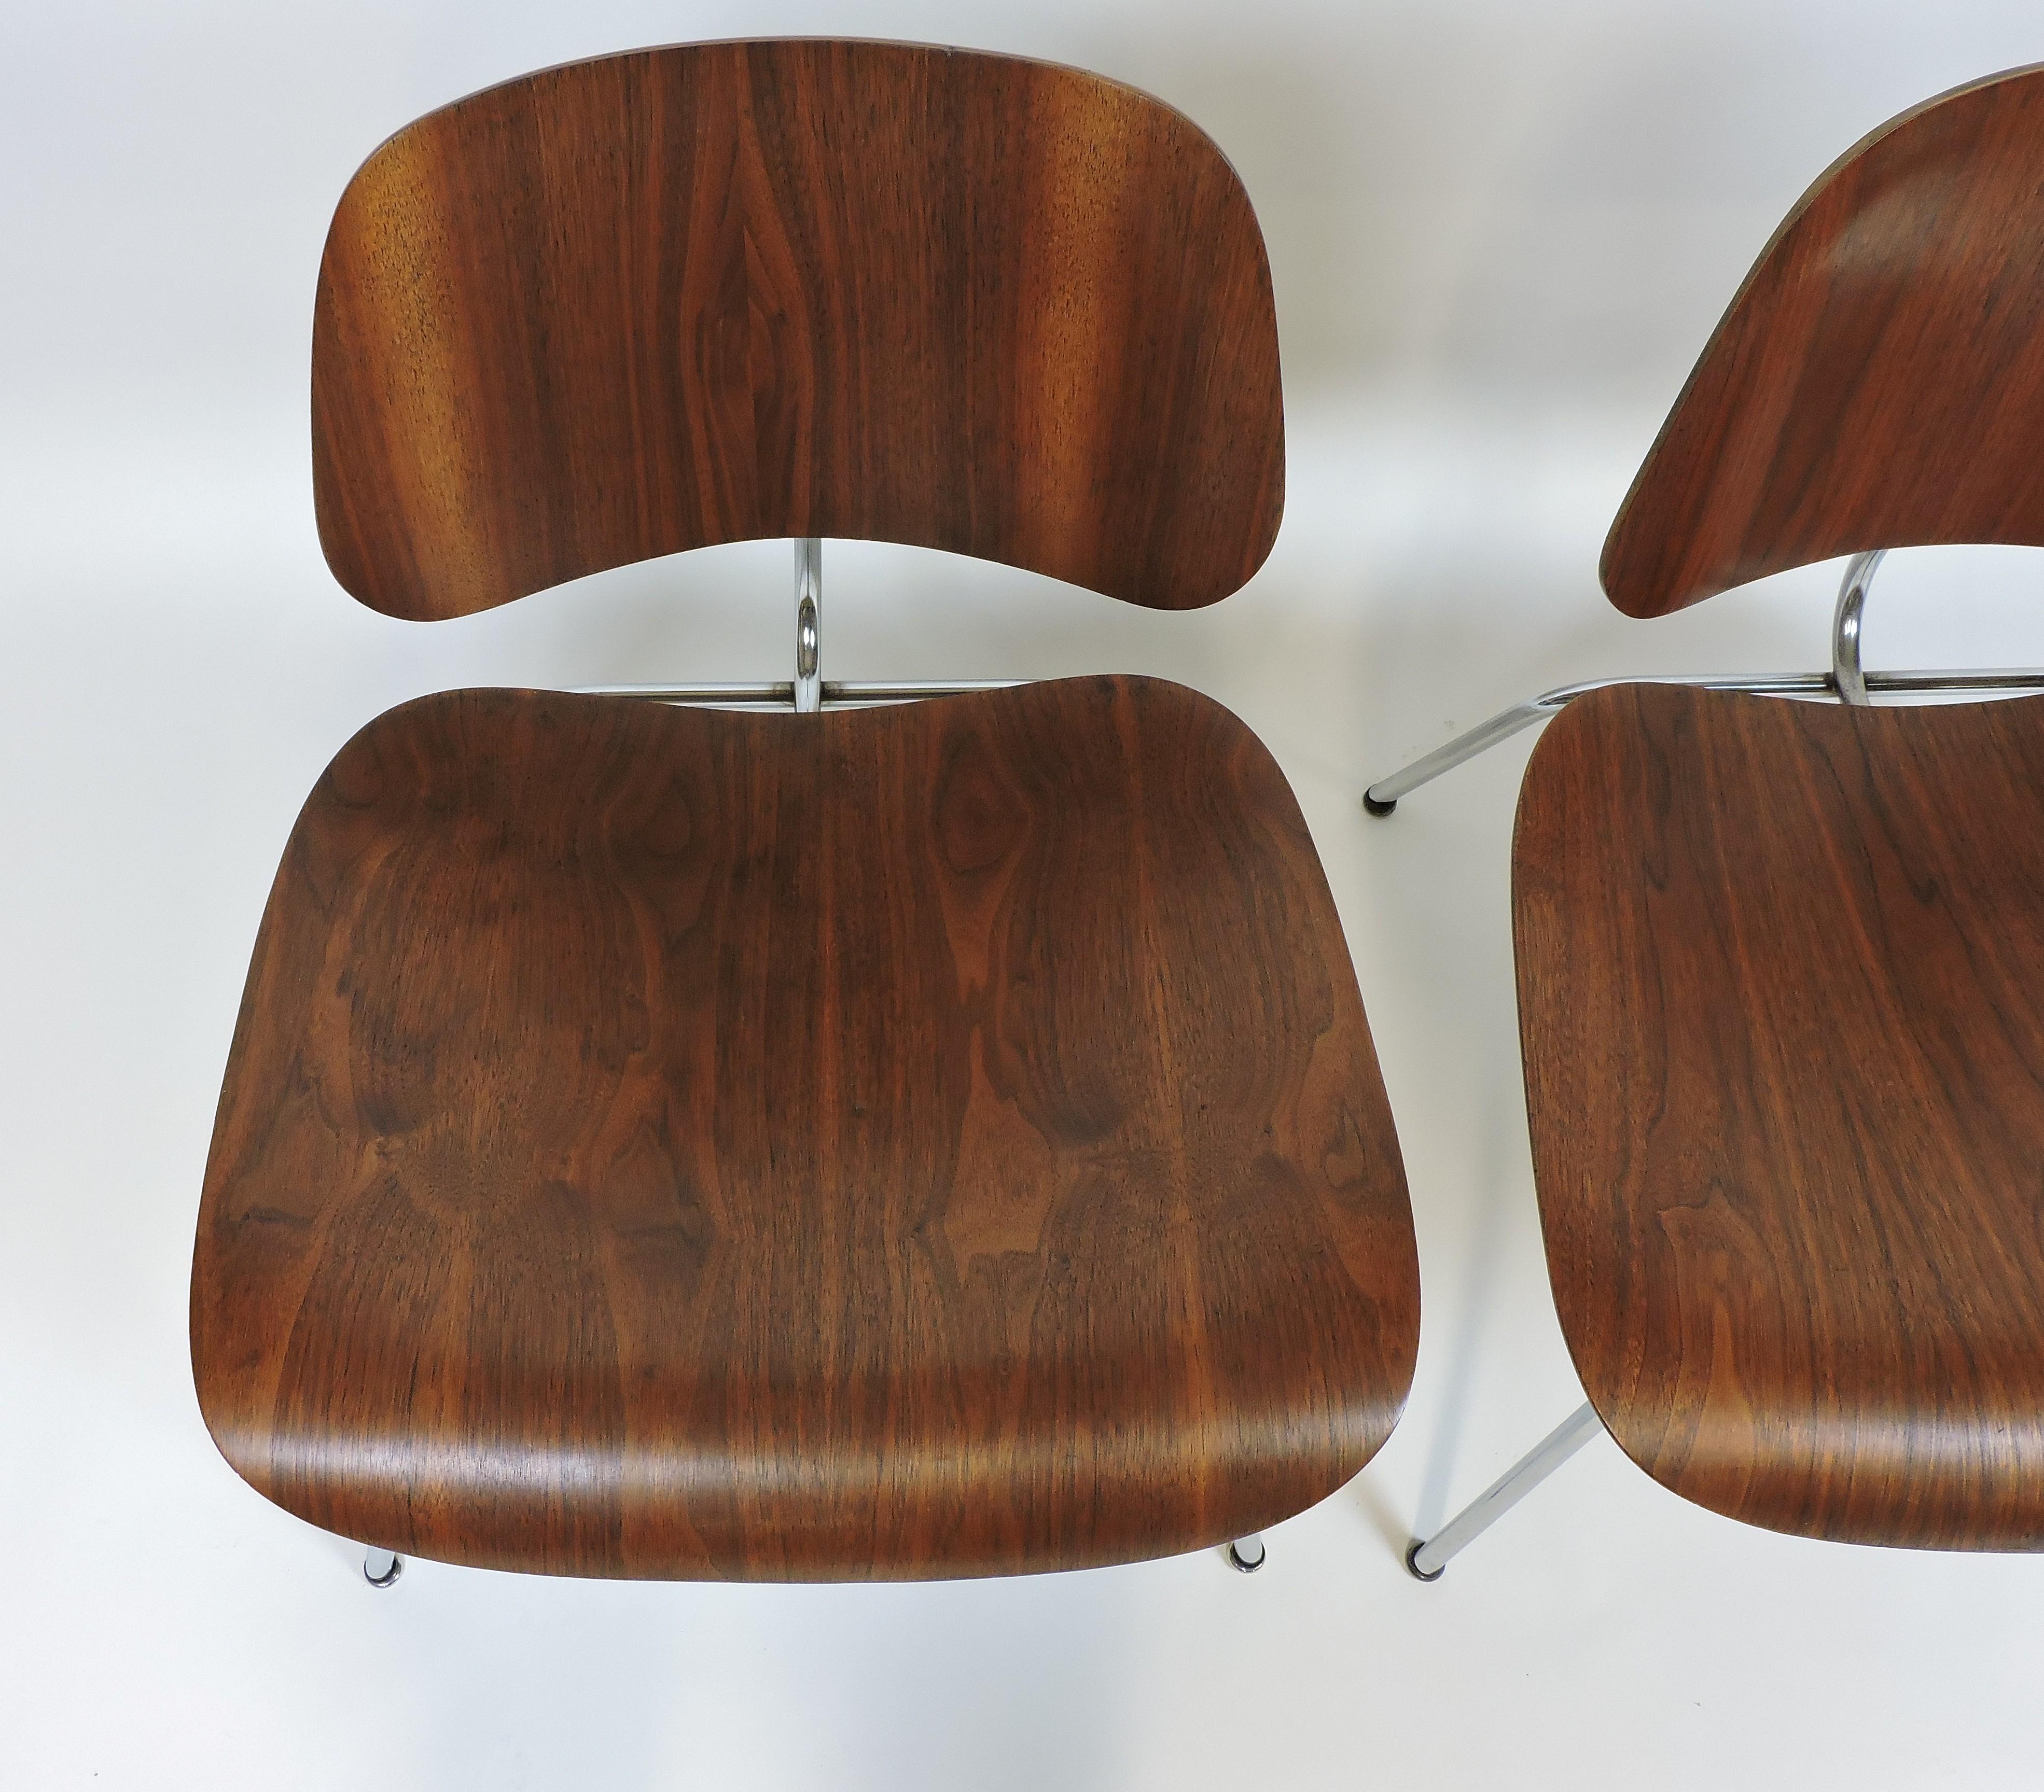 Ein schwer zu findendes Paar früher LCM-Stühle, die von Charles und Ray Eames entworfen und in den 1940er Jahren von der Evans Products Company hergestellt wurden. Diese Stühle sind in sehr gutem Zustand mit geringen Gebrauchsspuren, eventuellen